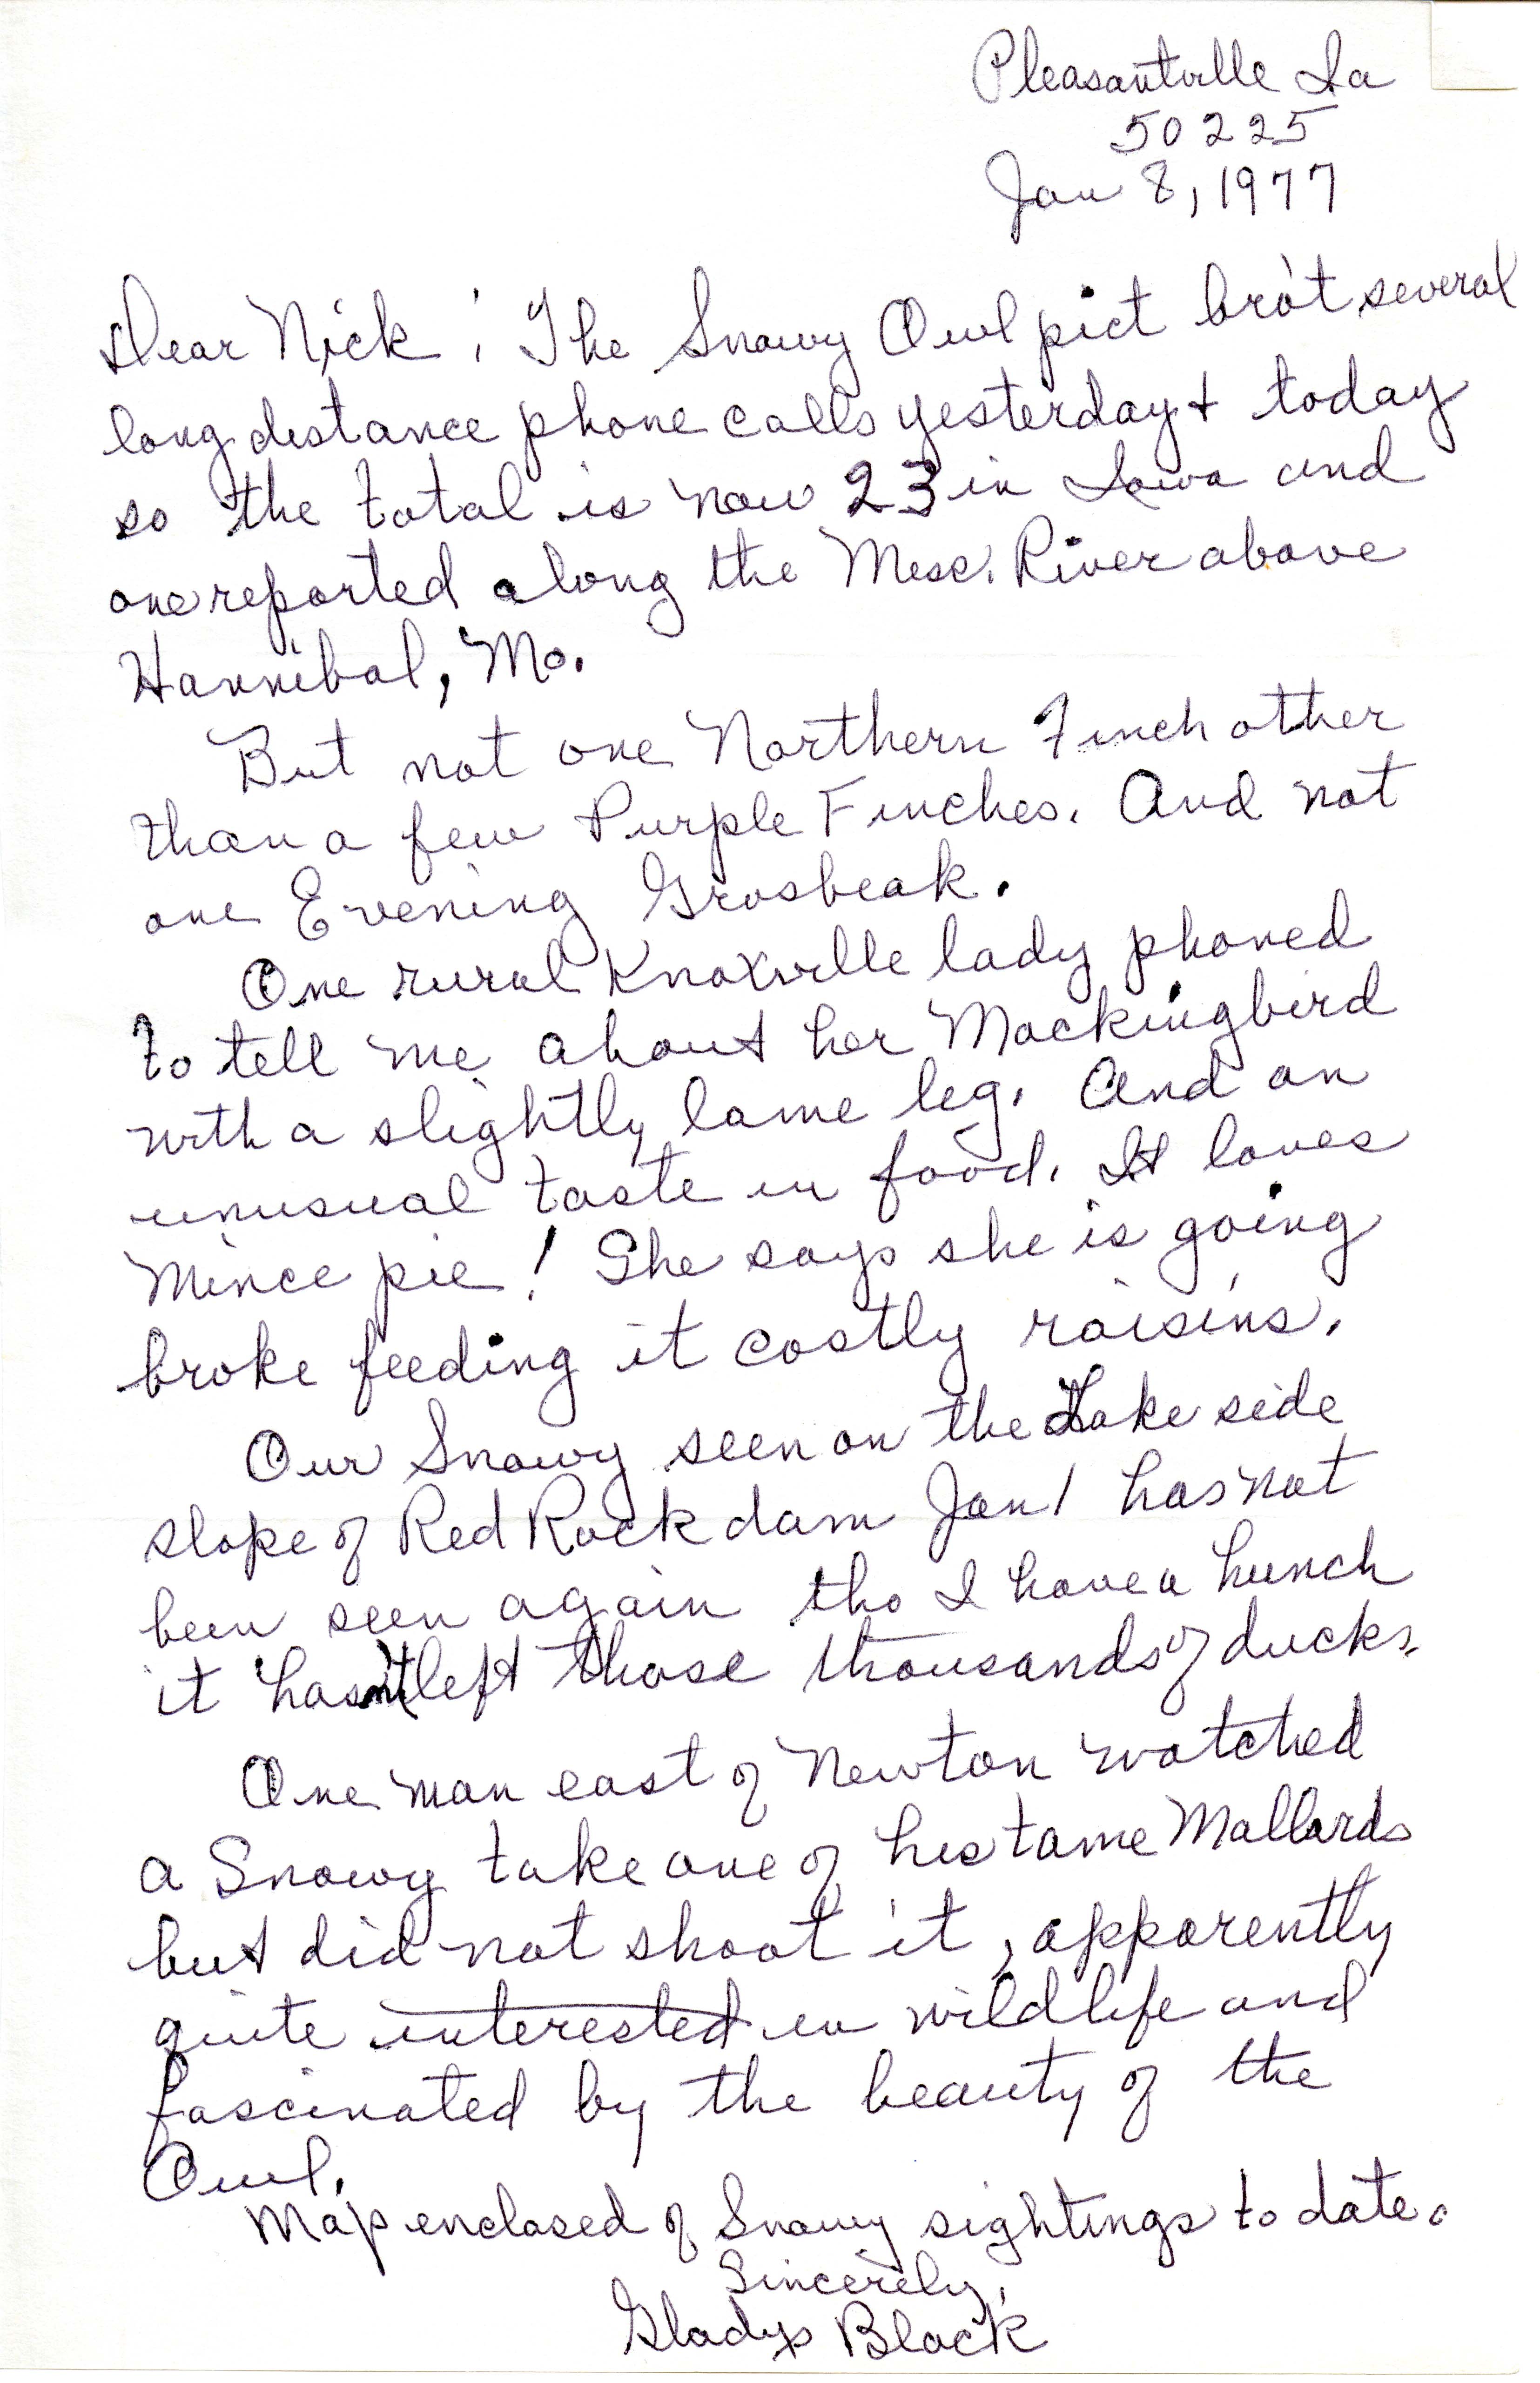 Gladys Black letter to Nicholas S. Halmi regarding bird sightings, January 8, 1977